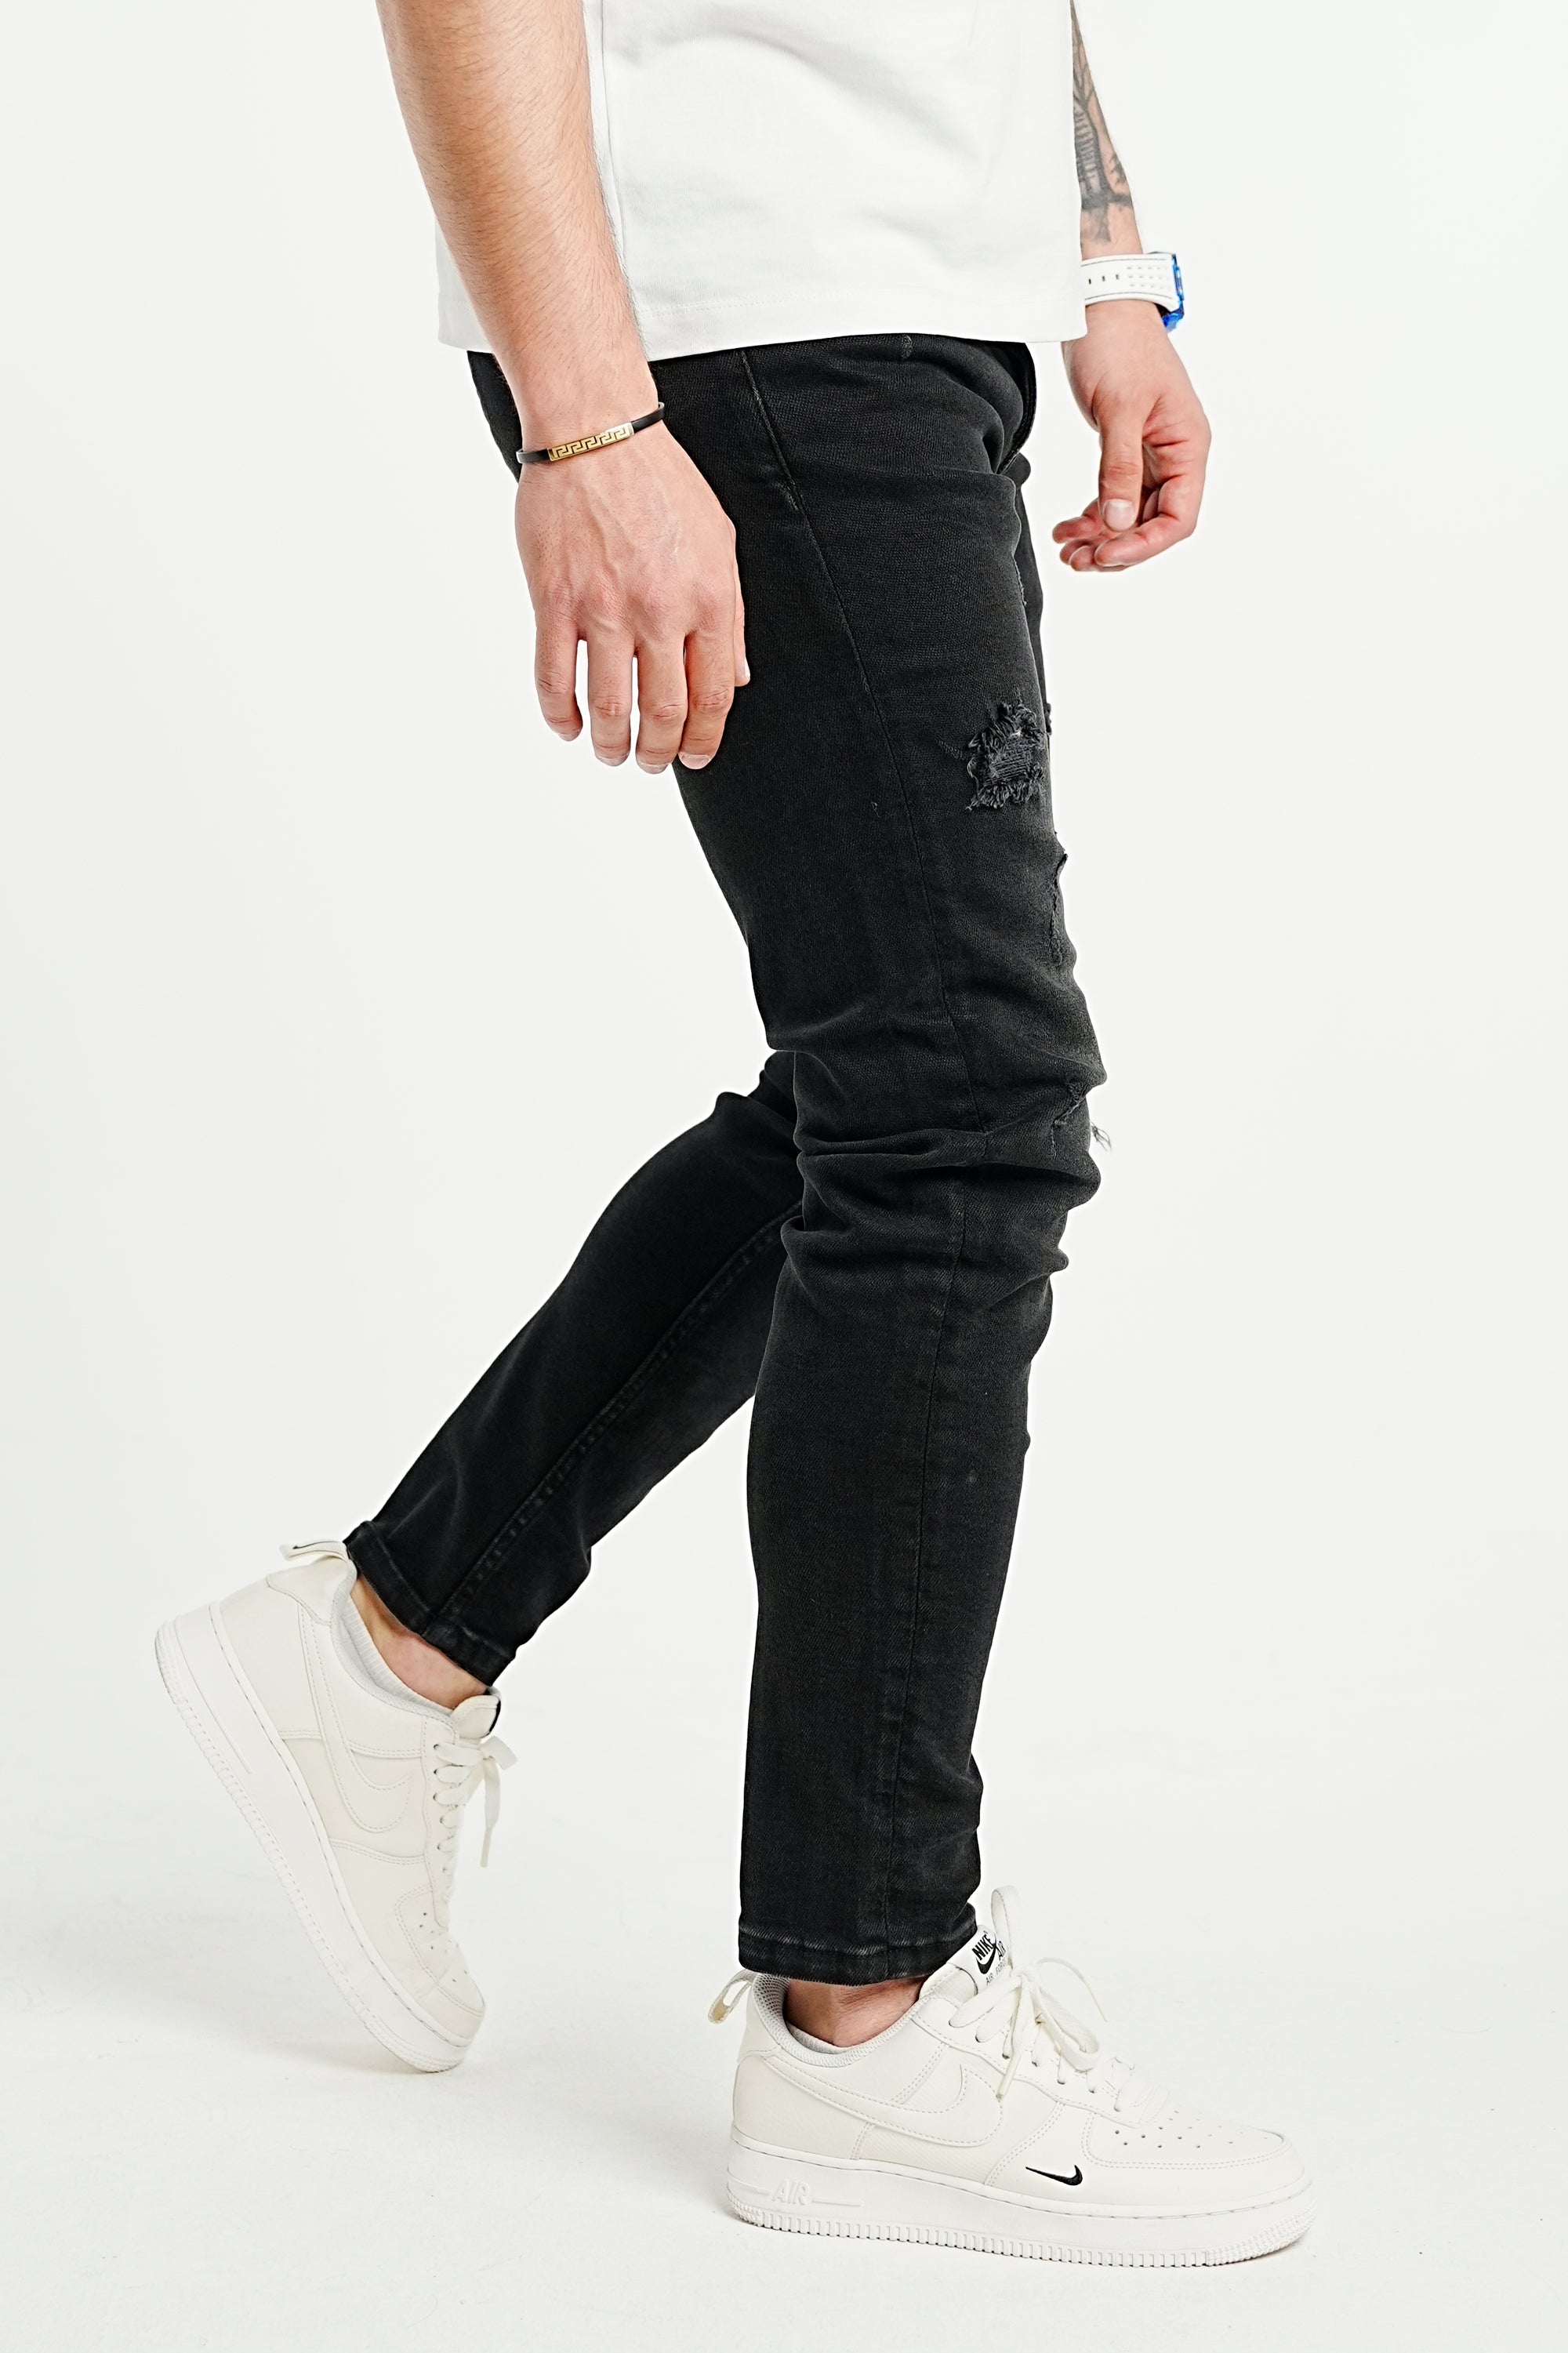 Premium High Stretch Ripped Black Jeans - UNEFFECTED STUDIOS® - JEANS - UNEFFECTED STUDIOS®